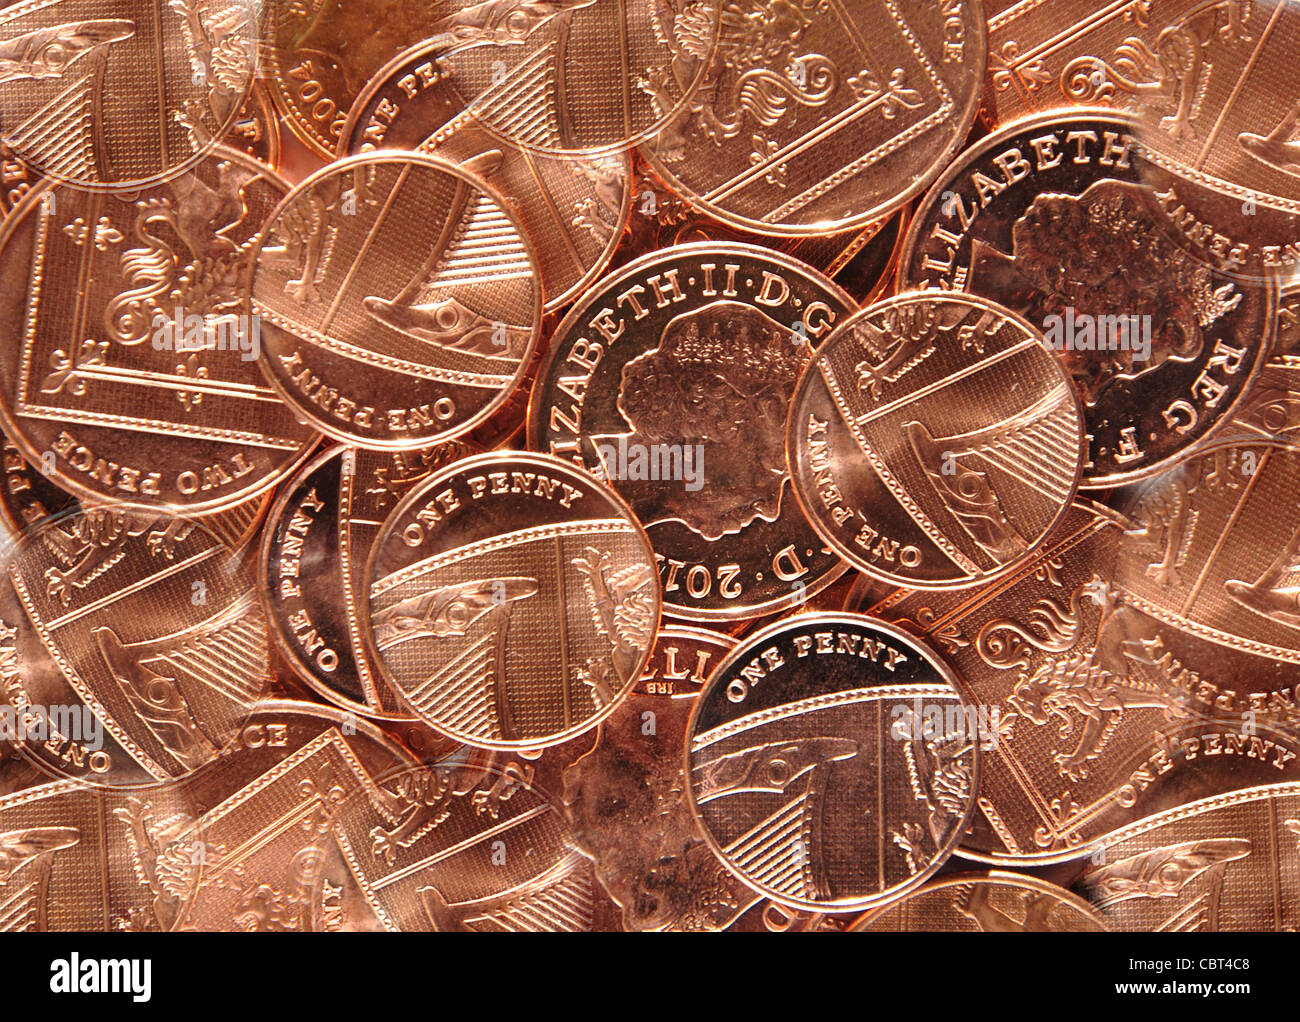 Colección de British nuevos peniques, Greater London, England, Reino Unido Foto de stock